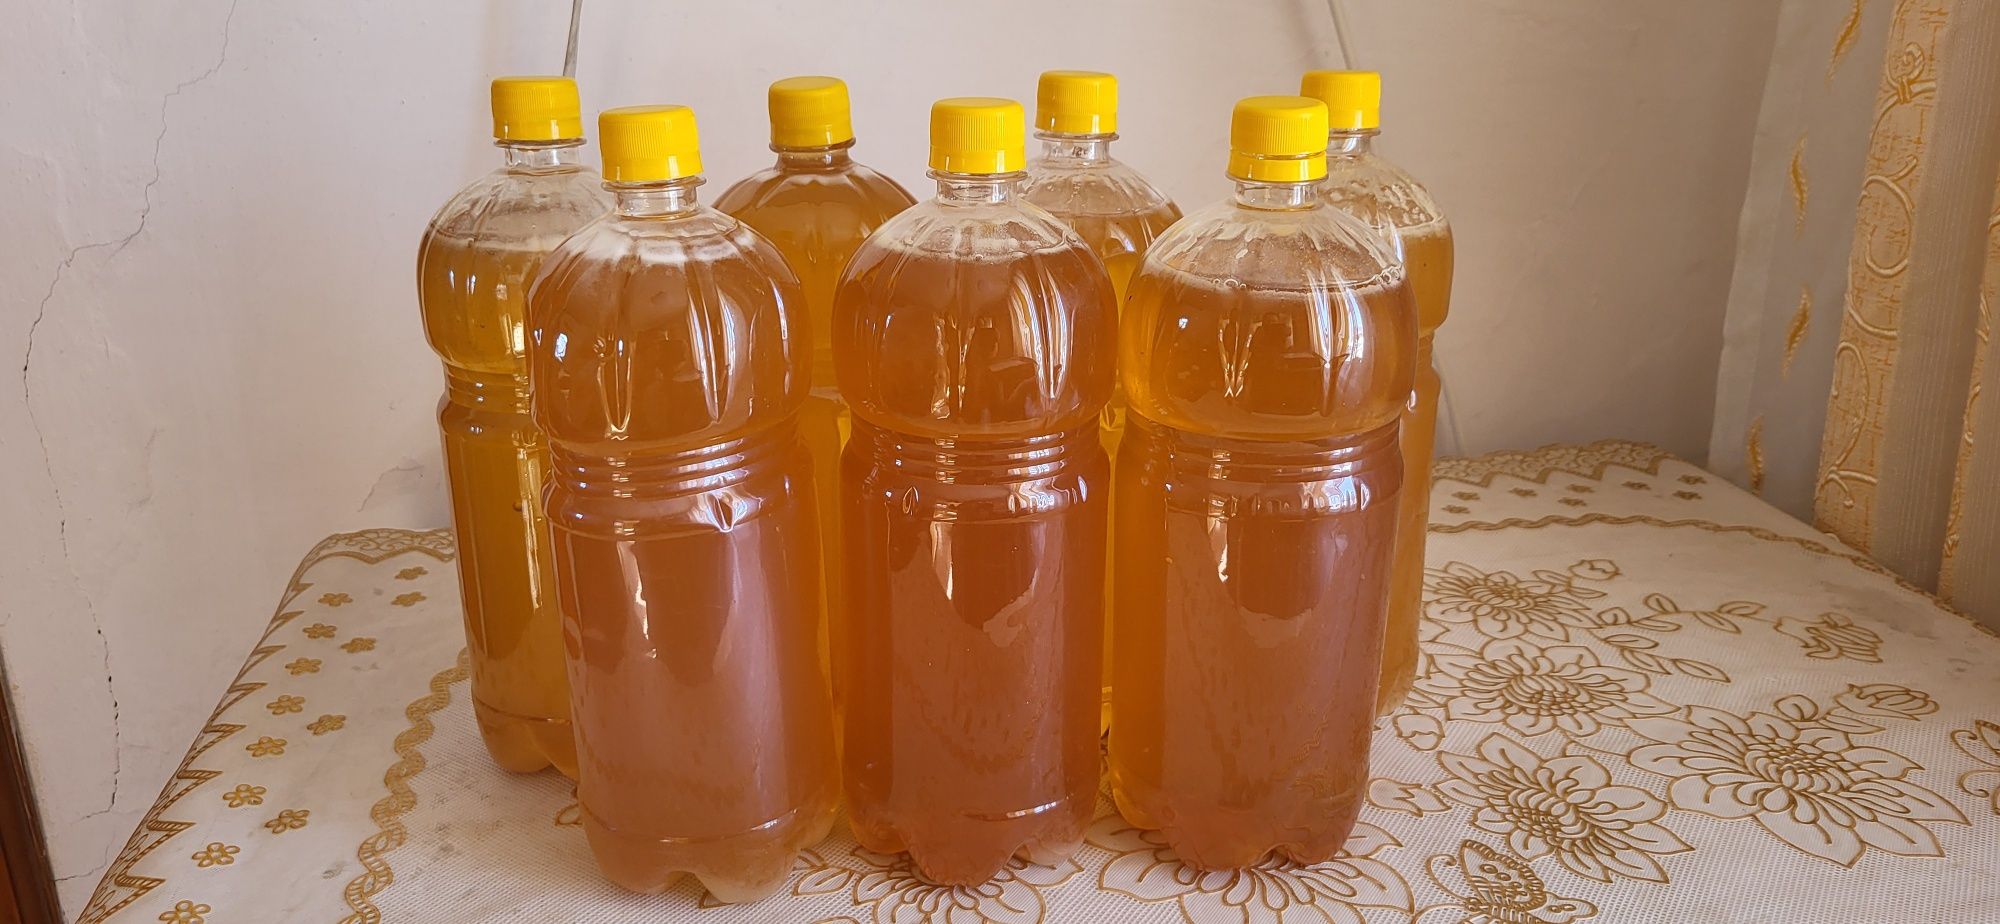 Продаётся Мёд натуральный продукт из разнотравие,горных цветов Алтая.